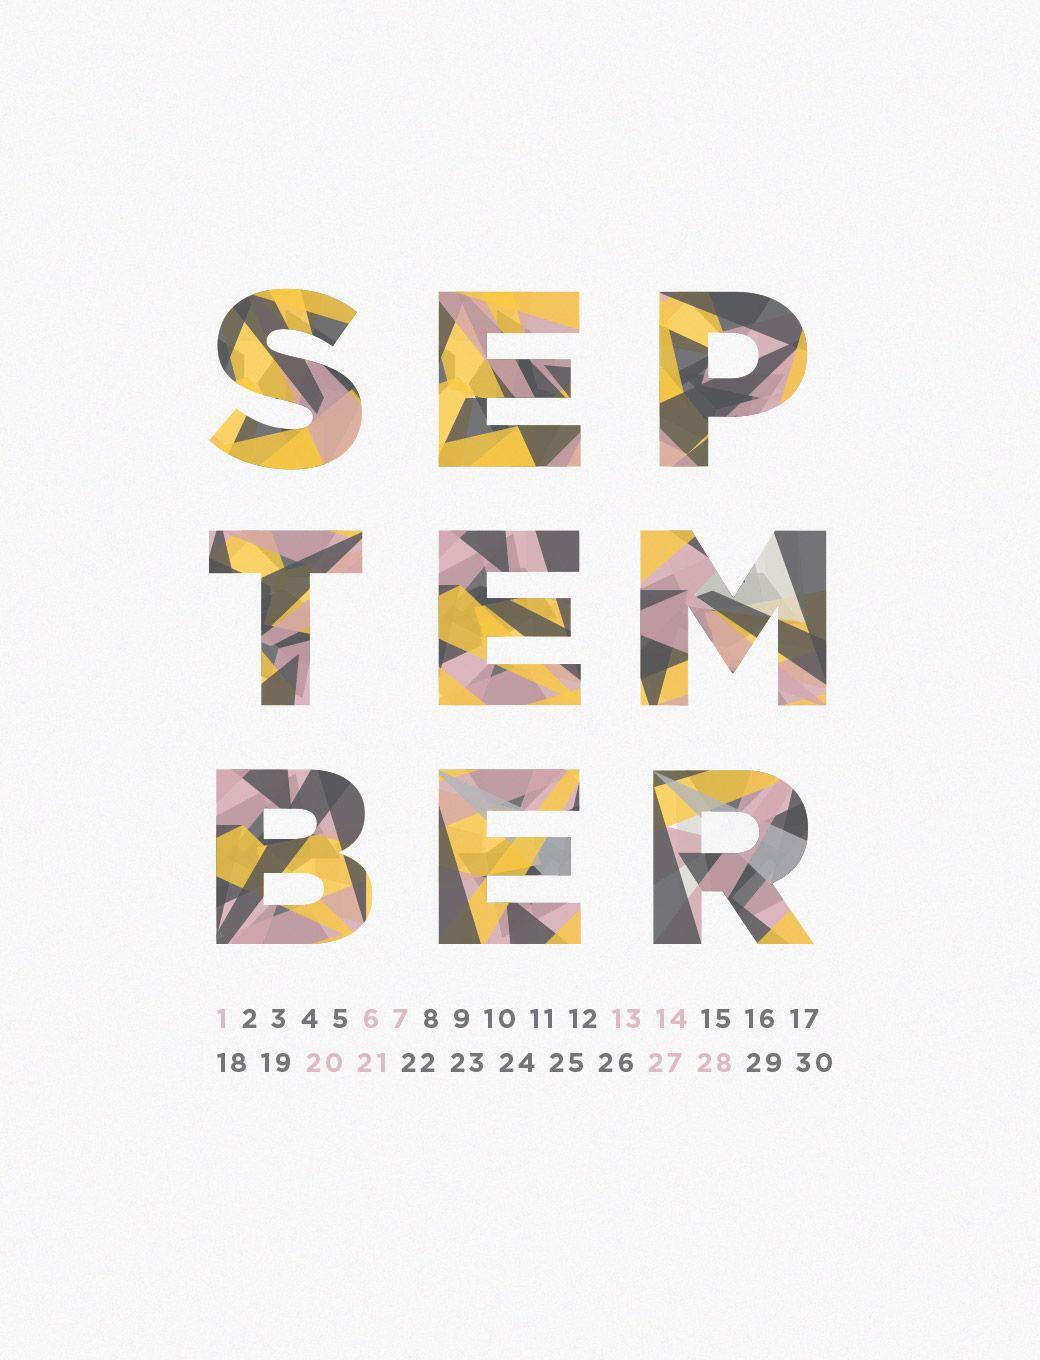 September 2014 Desktop Calendar Wallpaper